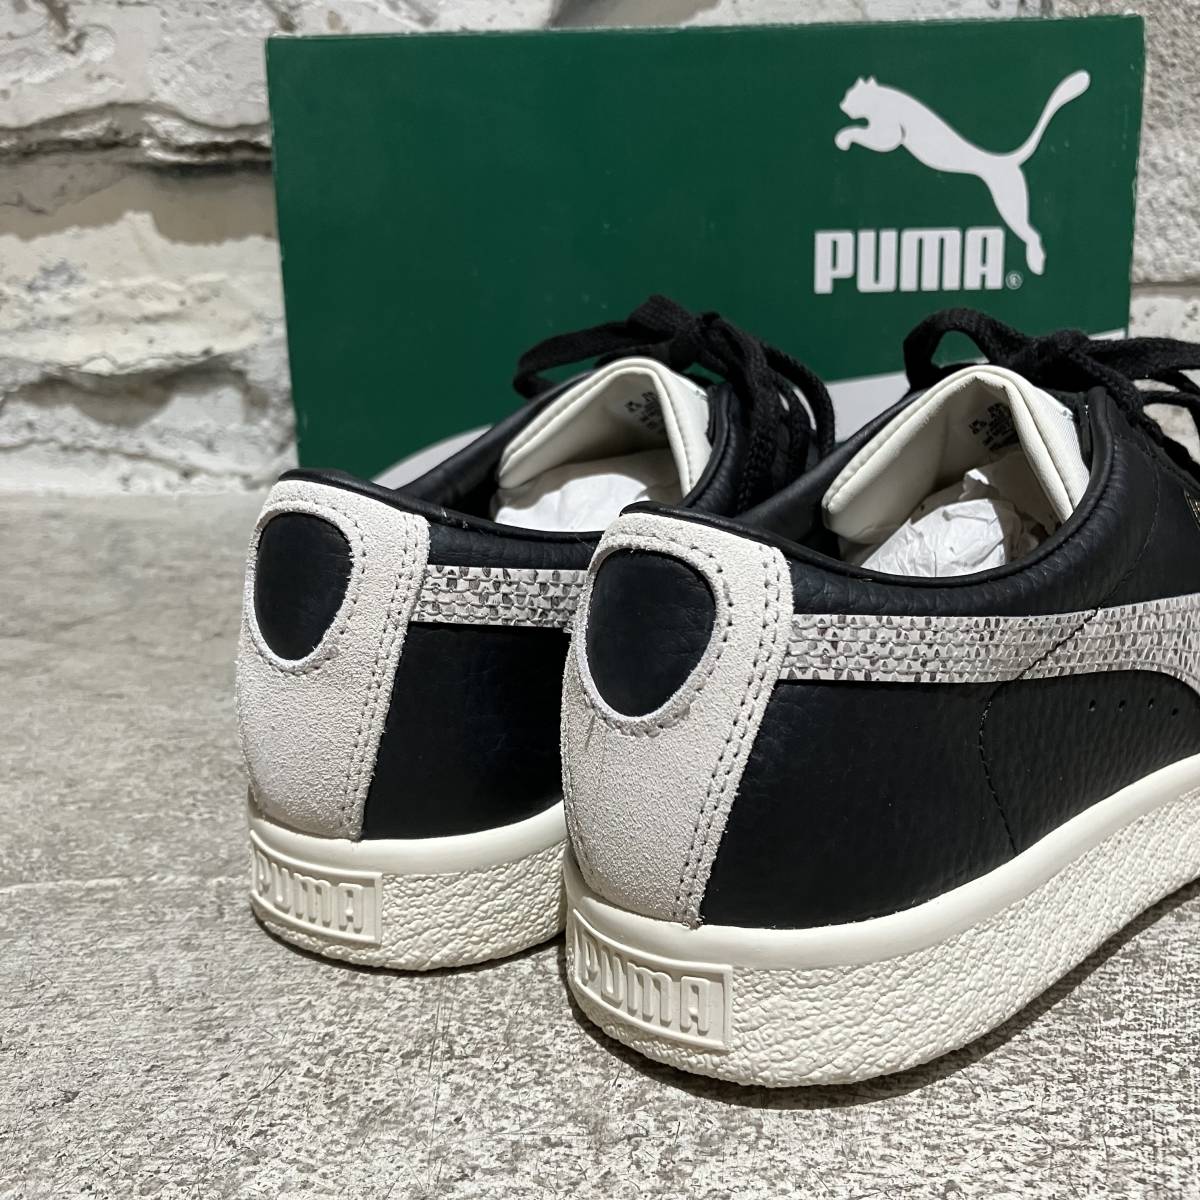  almost unused PUMA Basket VTG Snake Puma basket Vintage Sune -k sneakers size 27.5cm.9030